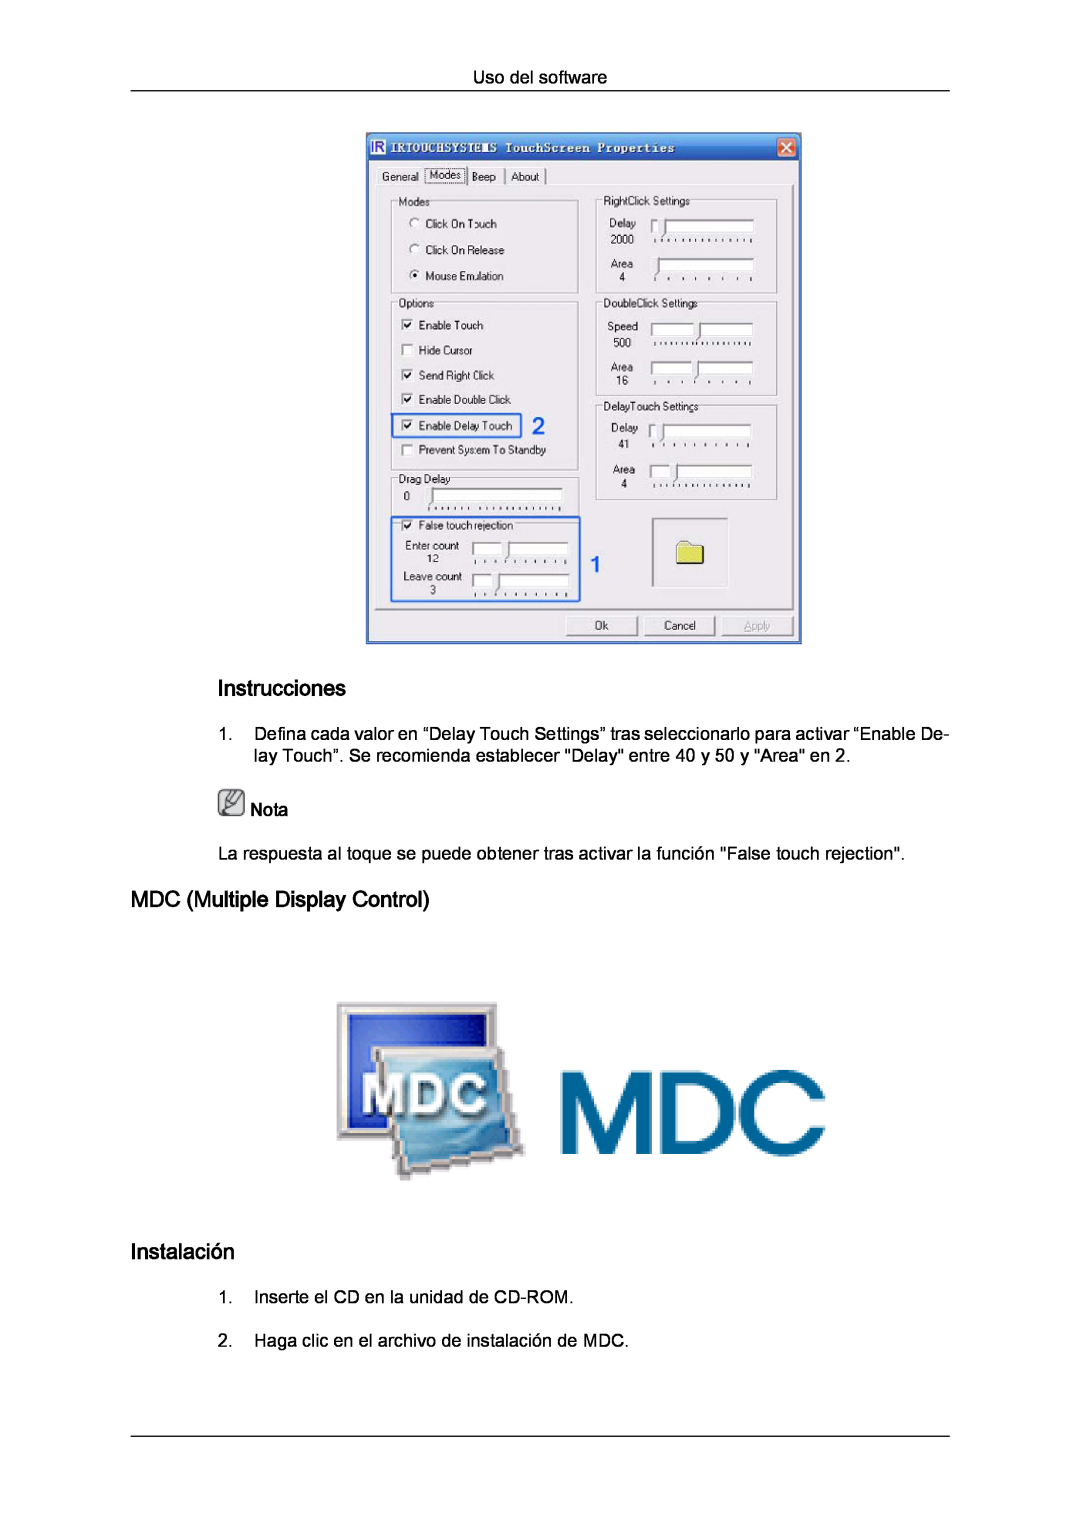 Samsung LH82TCUMBG/EN, LH70TCUMBG/EN manual Instrucciones, MDC Multiple Display Control Instalación, Nota 